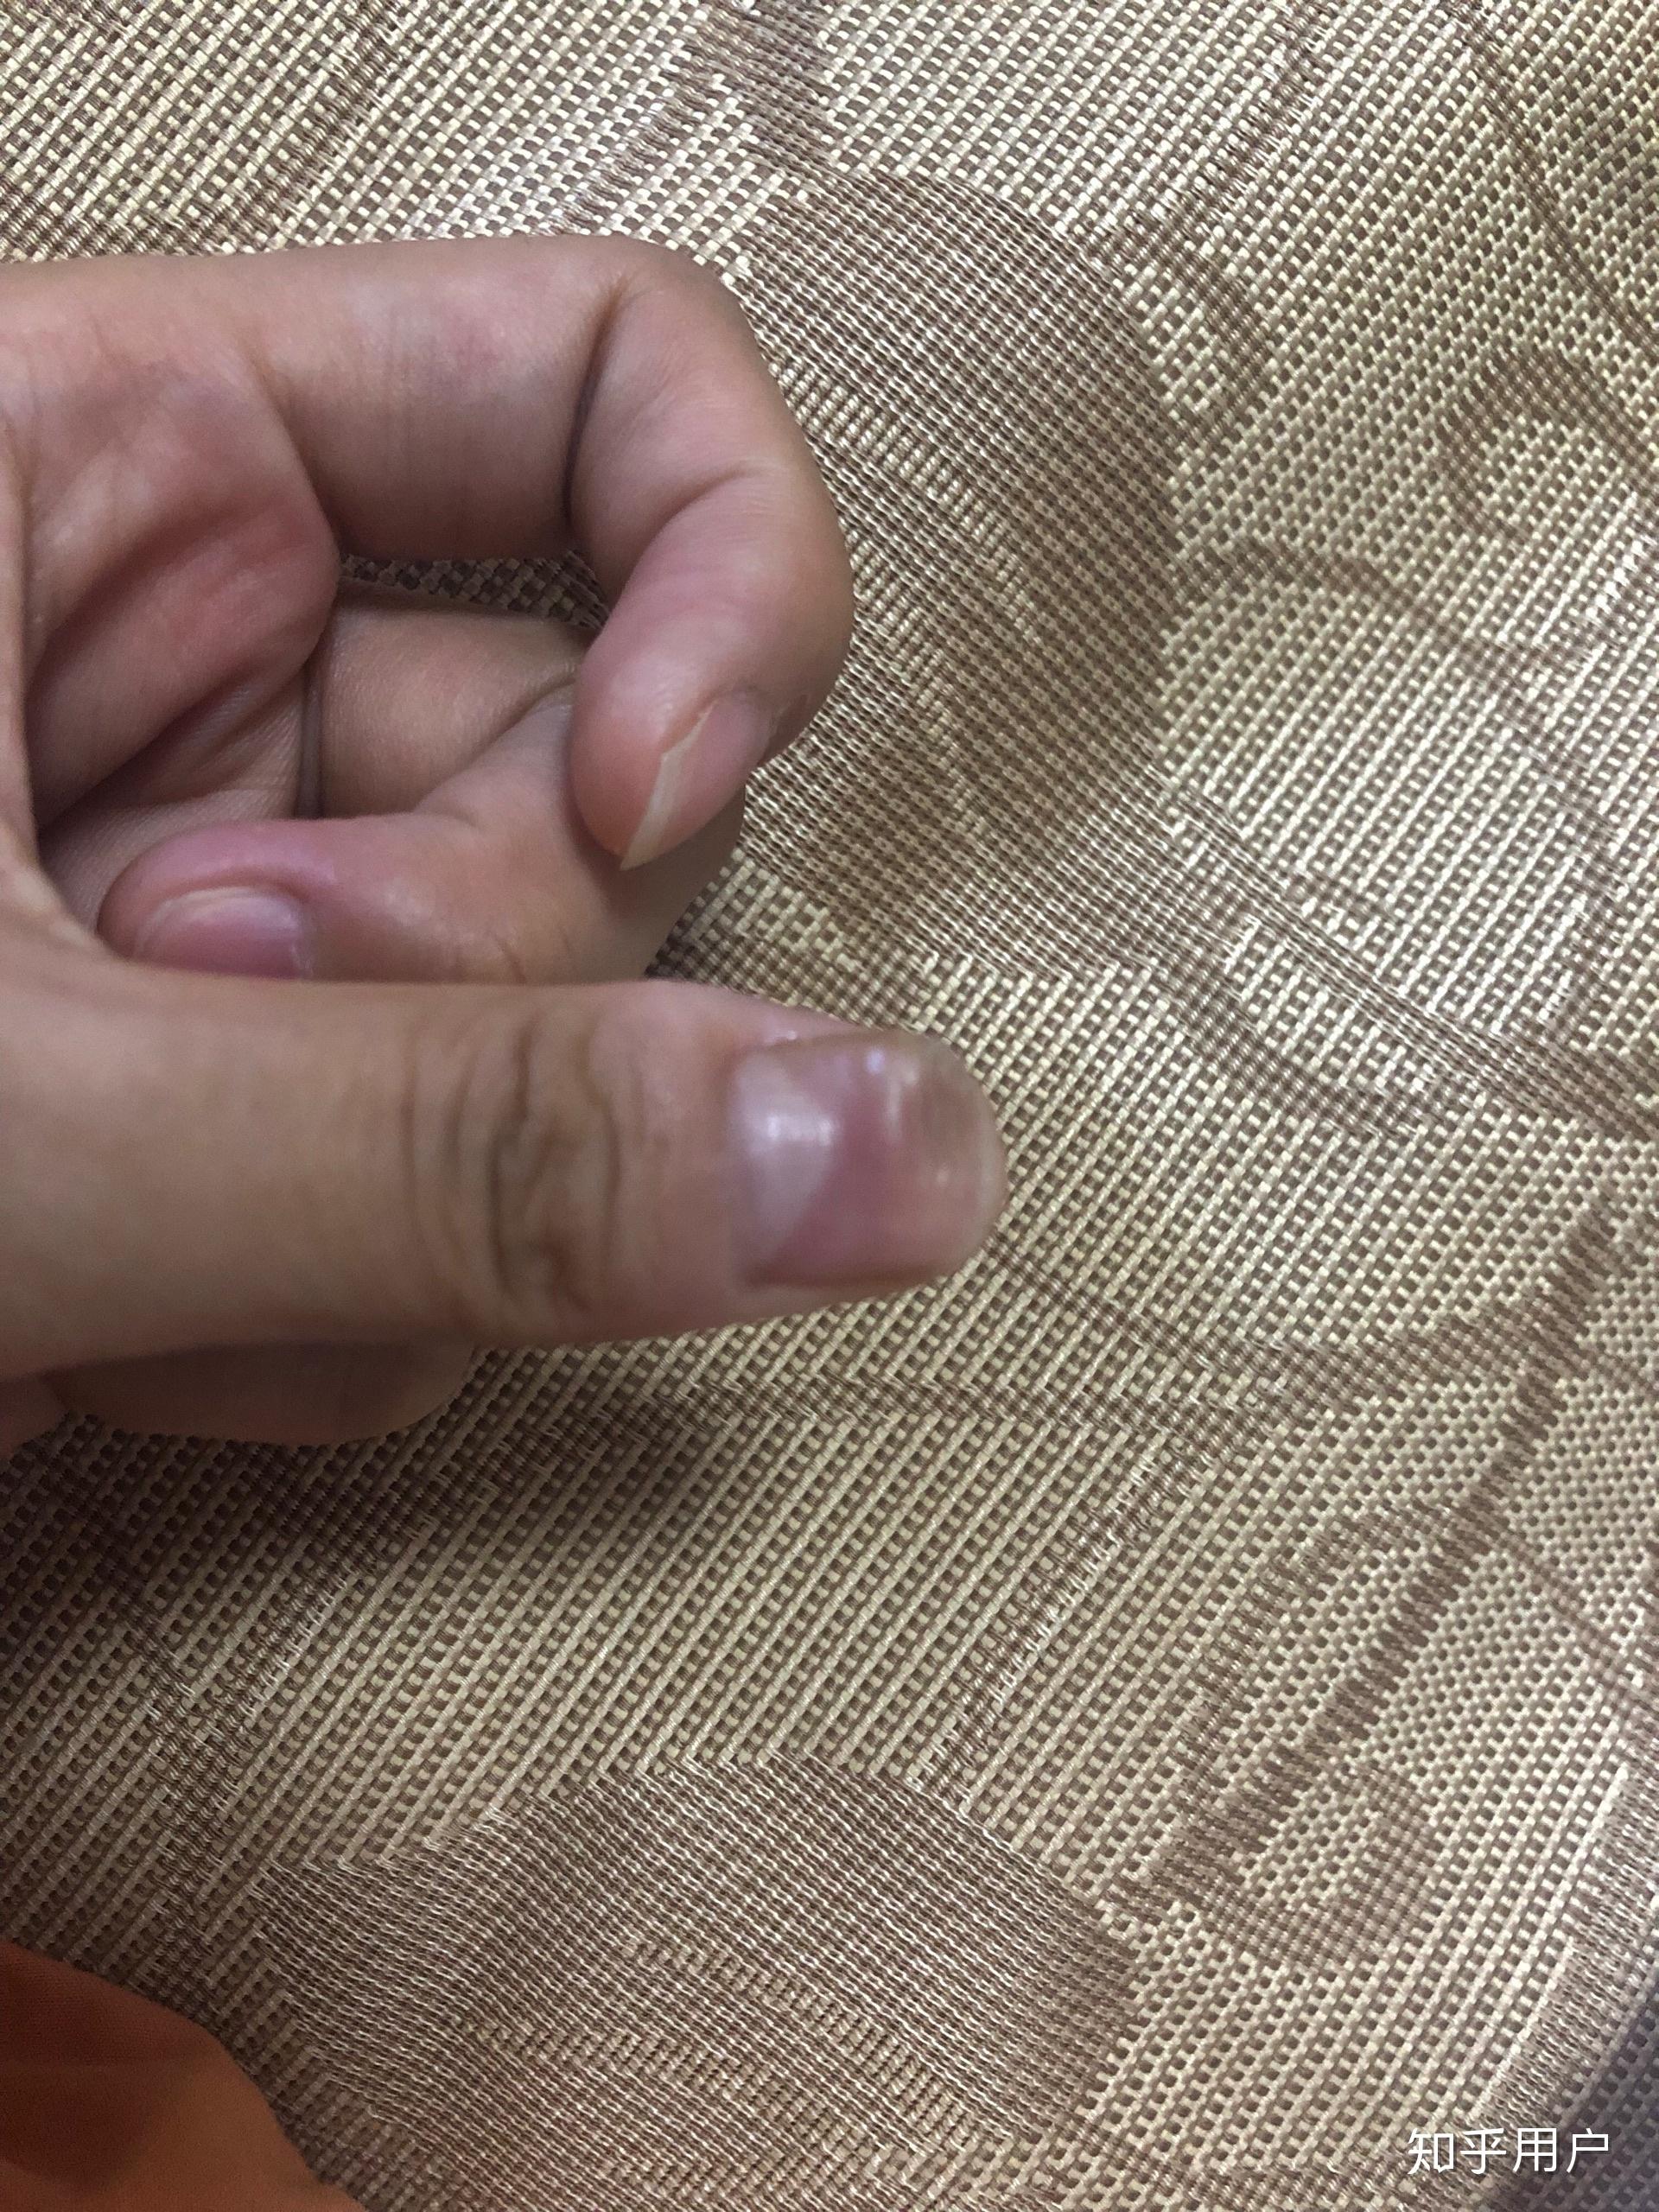 大拇指指甲凹陷图片